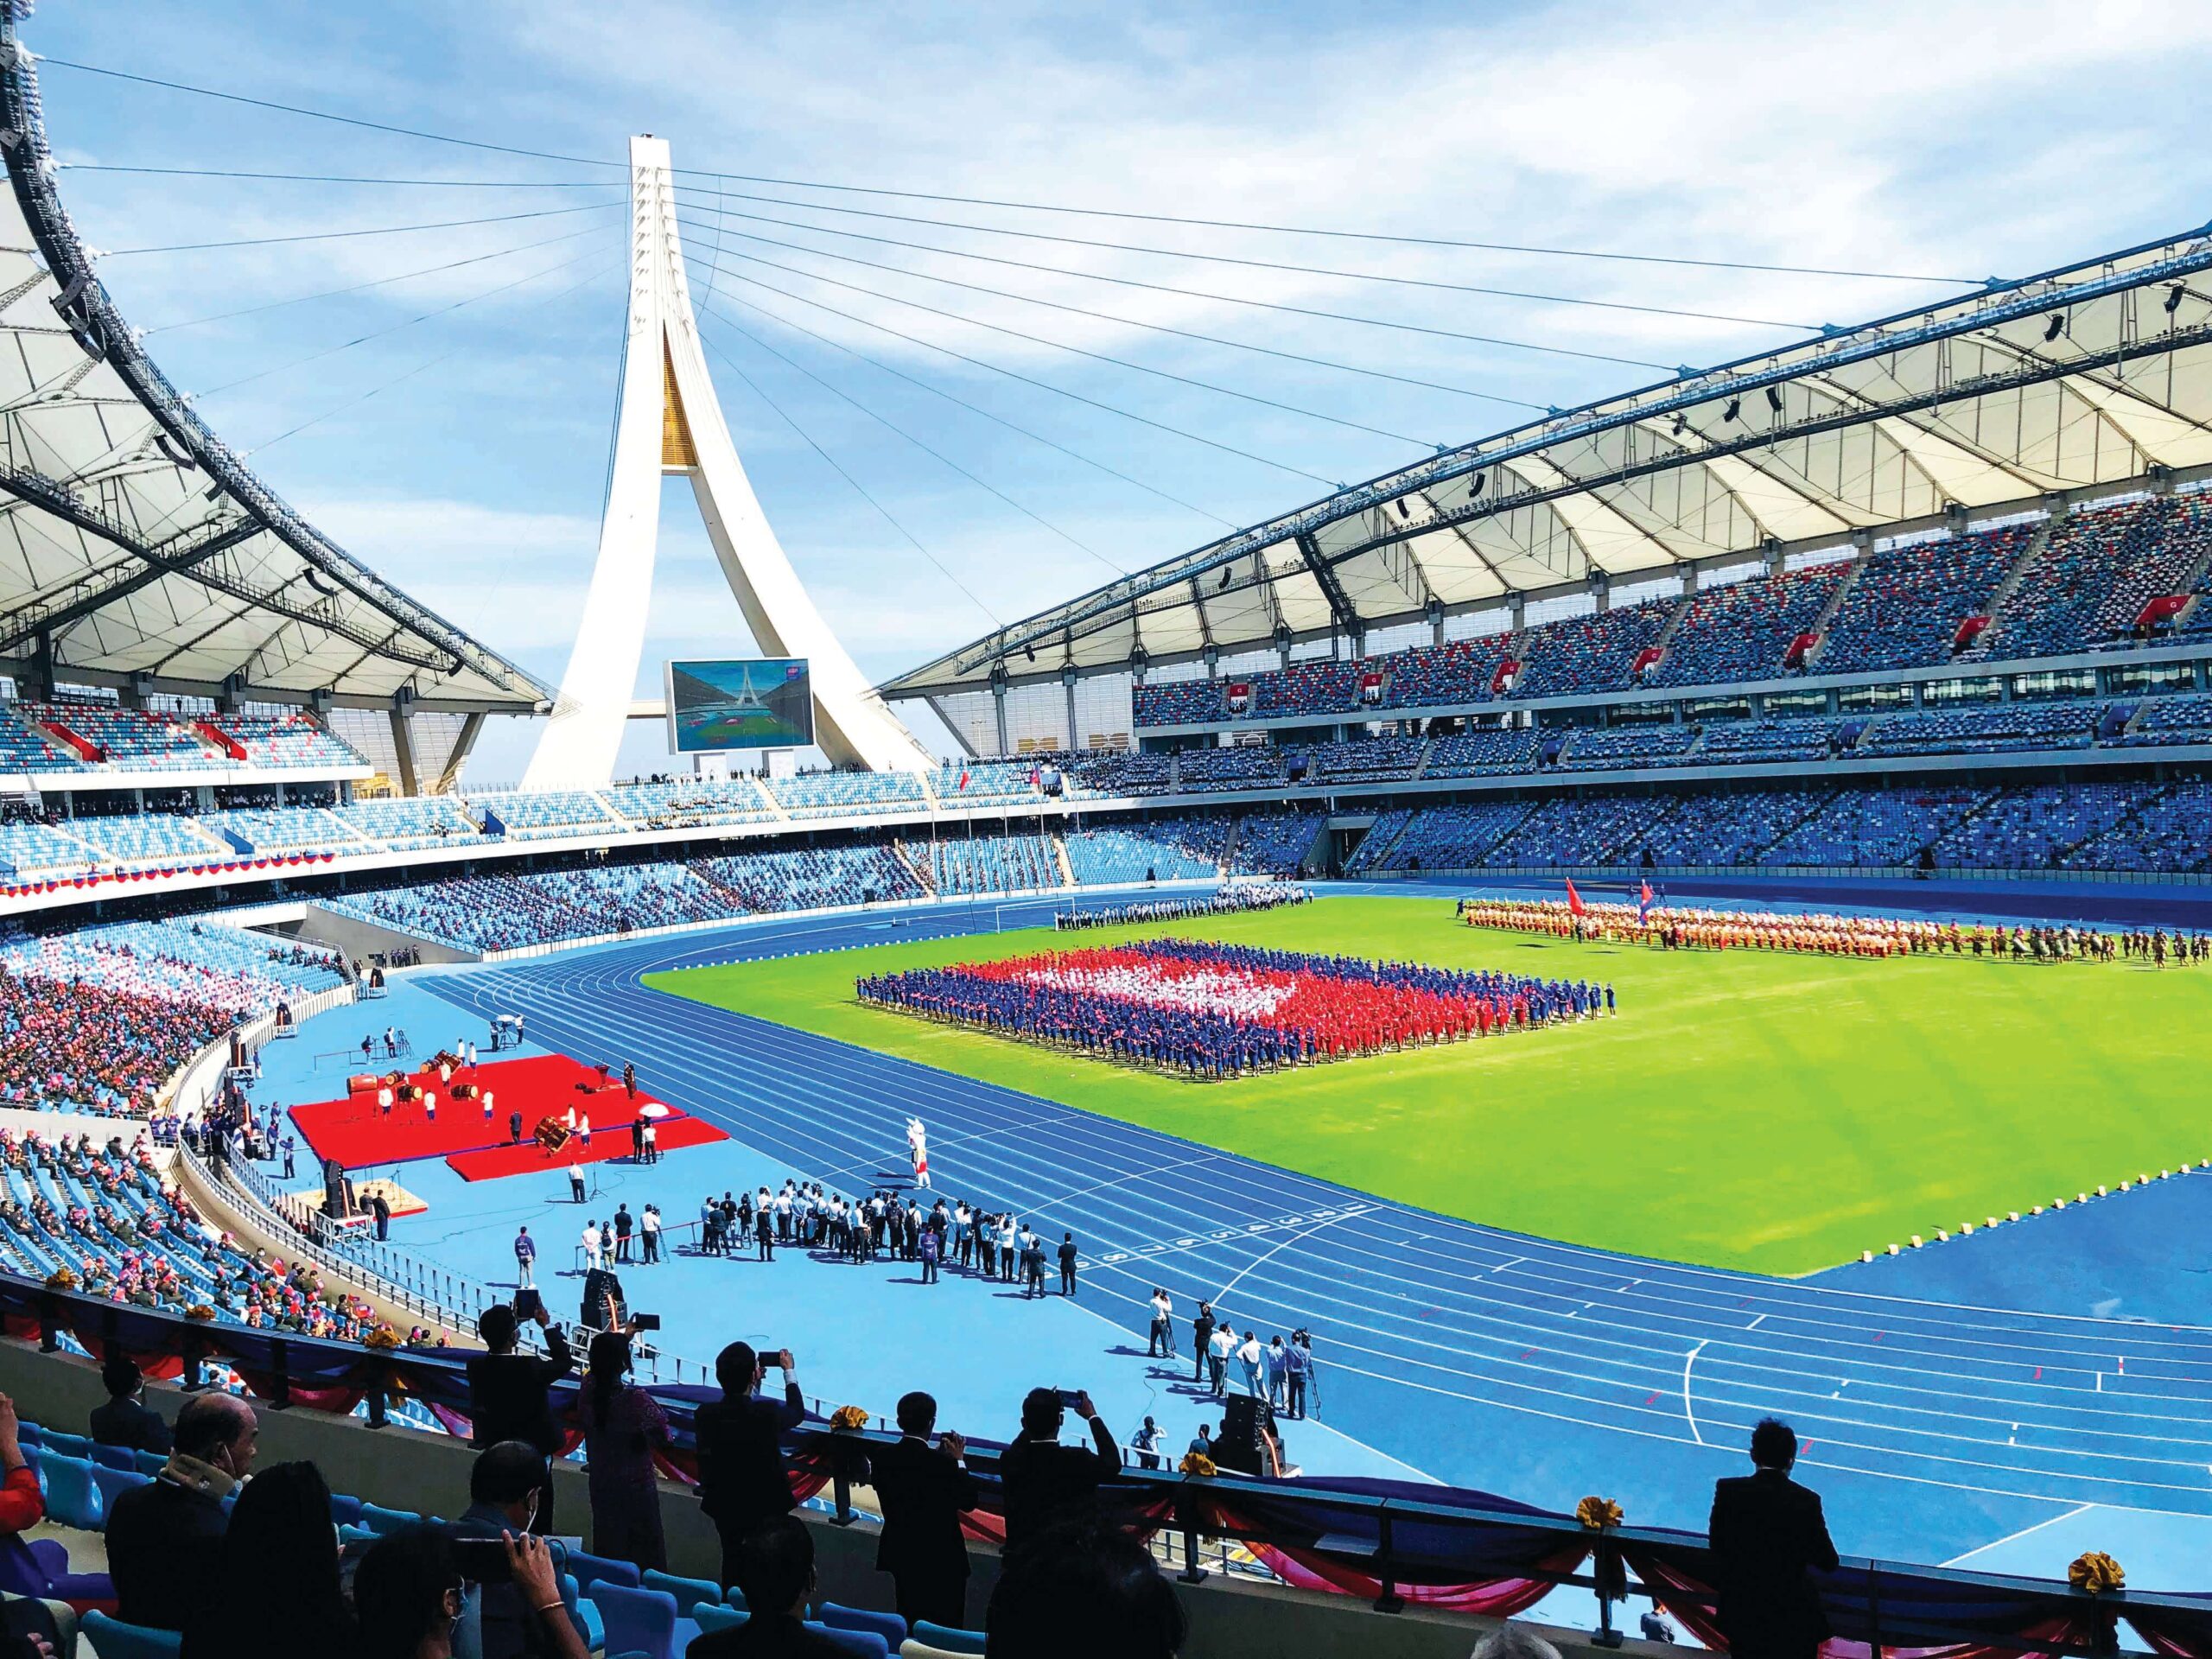 パラスポーツinカンボジア⑯新スタジアム（MORODOK TECHO NATIONAL STADIUM）の完成とアンコールワット国際ハ ーフマラソン